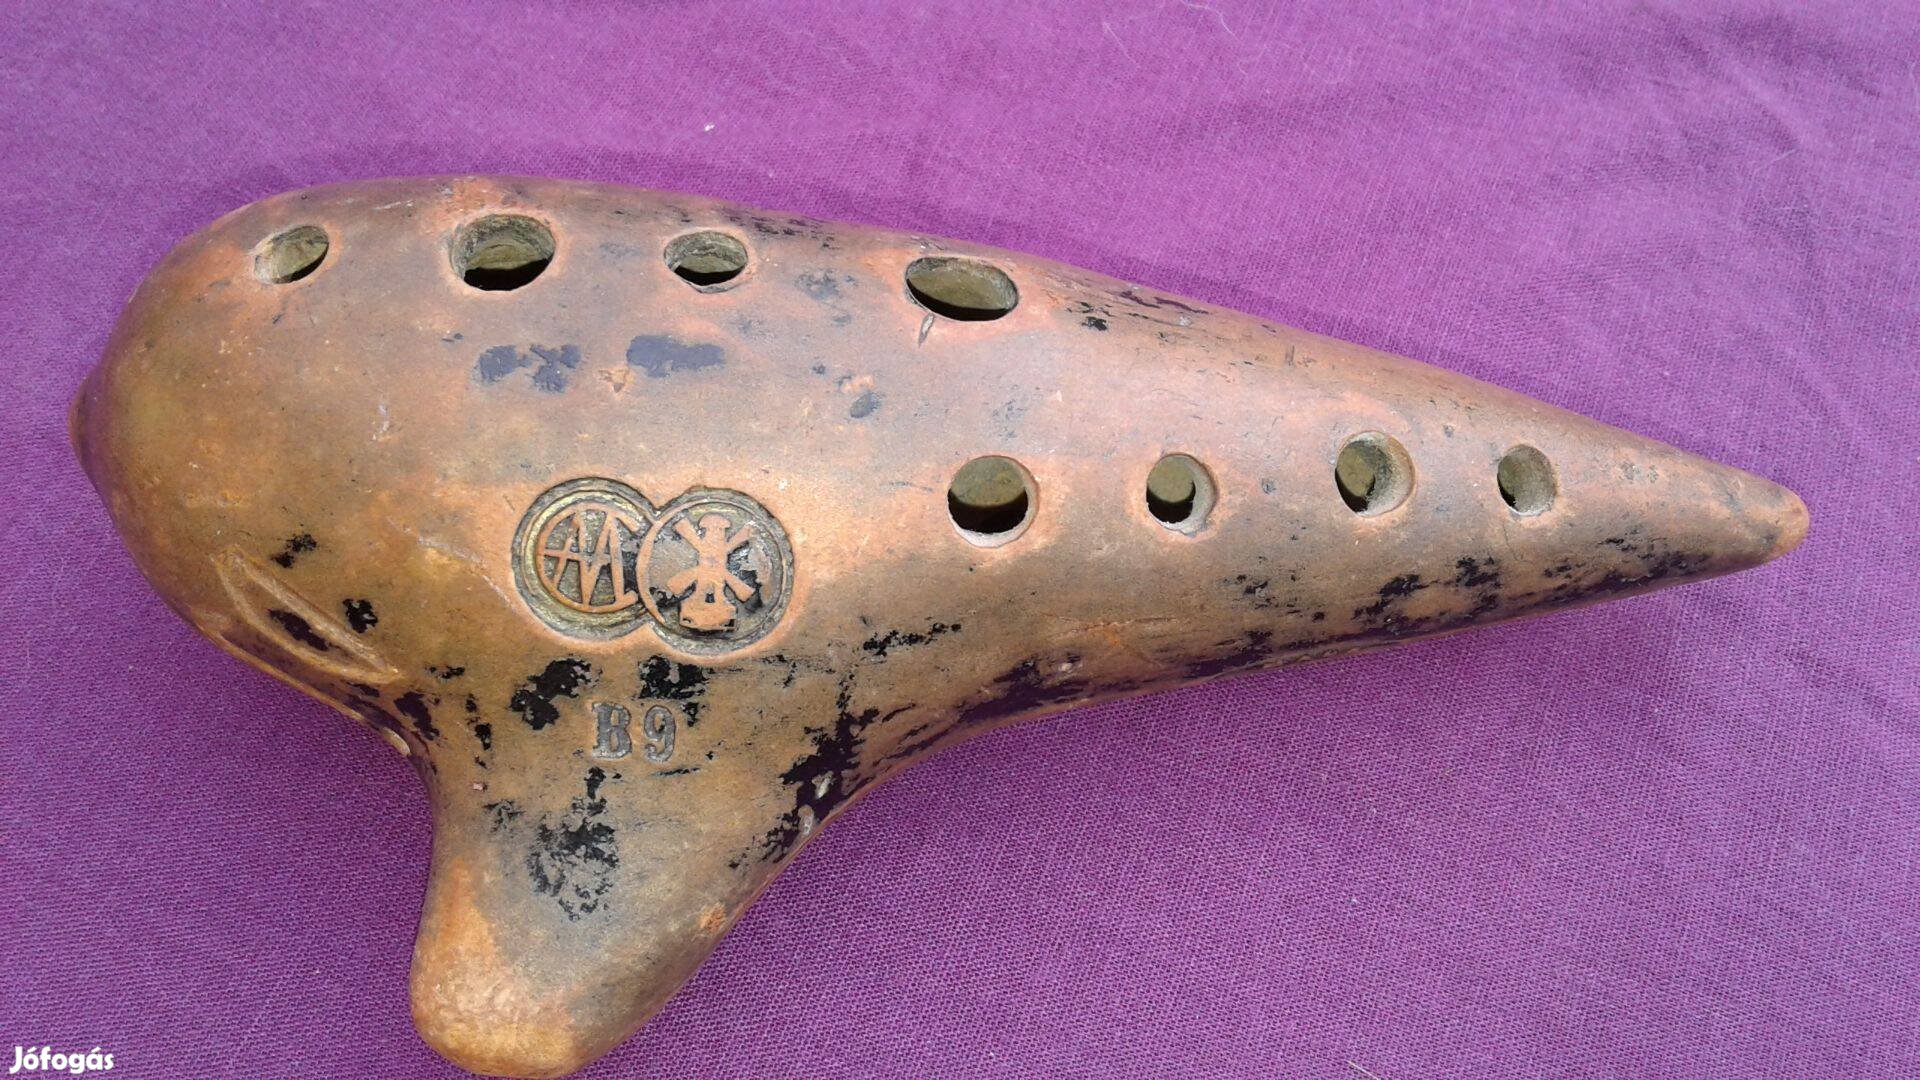 Antik okarina hangszer gyűjtőknek, nagyon régi, szép hangzás